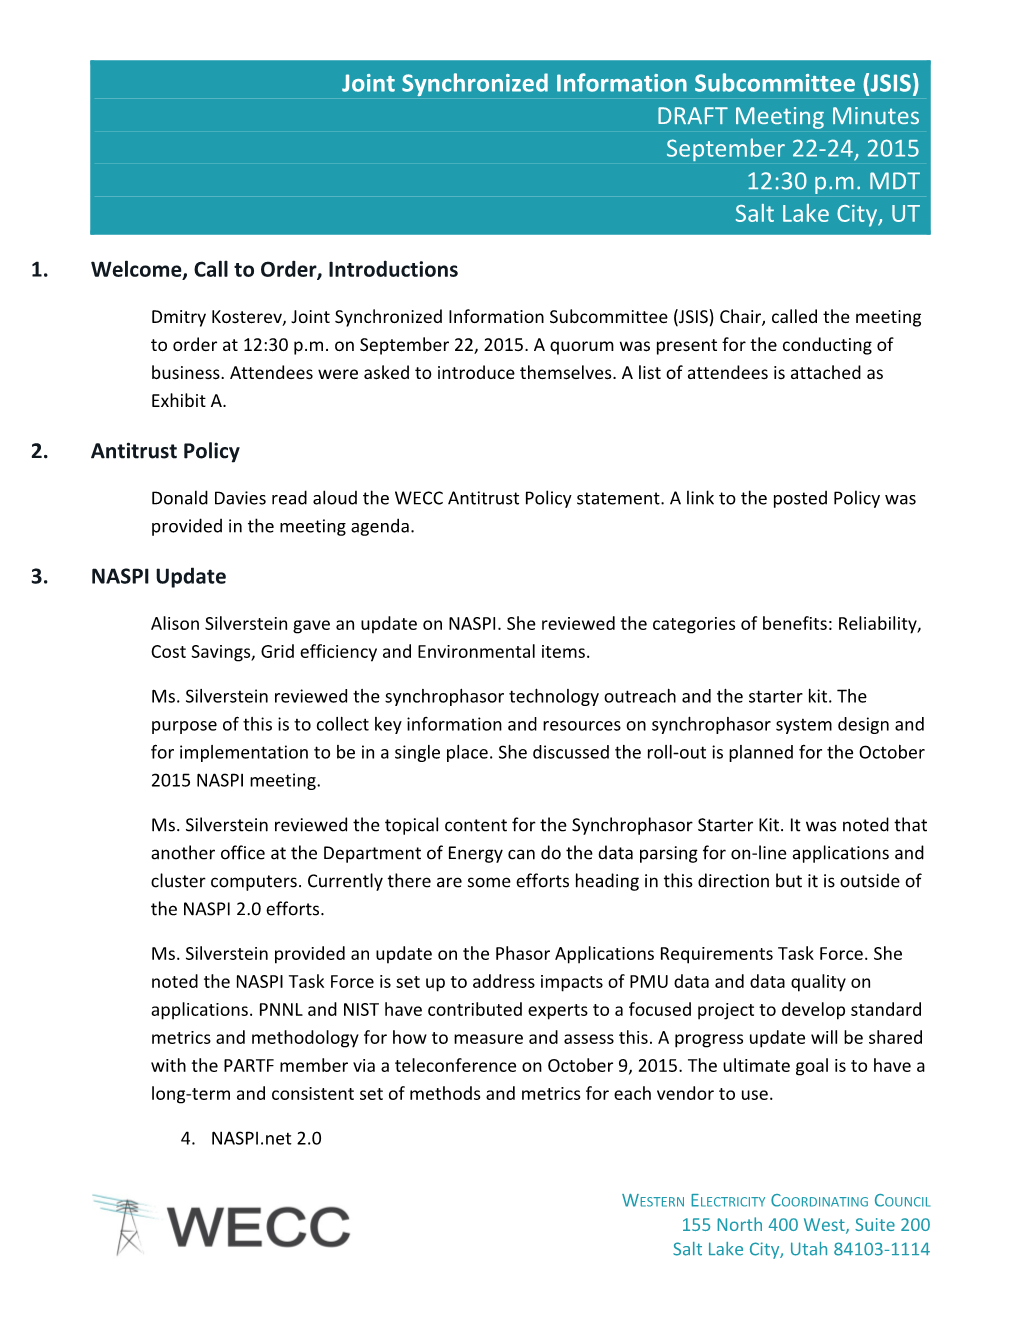 JSIS Meeting Minutes September 22-24, 201515